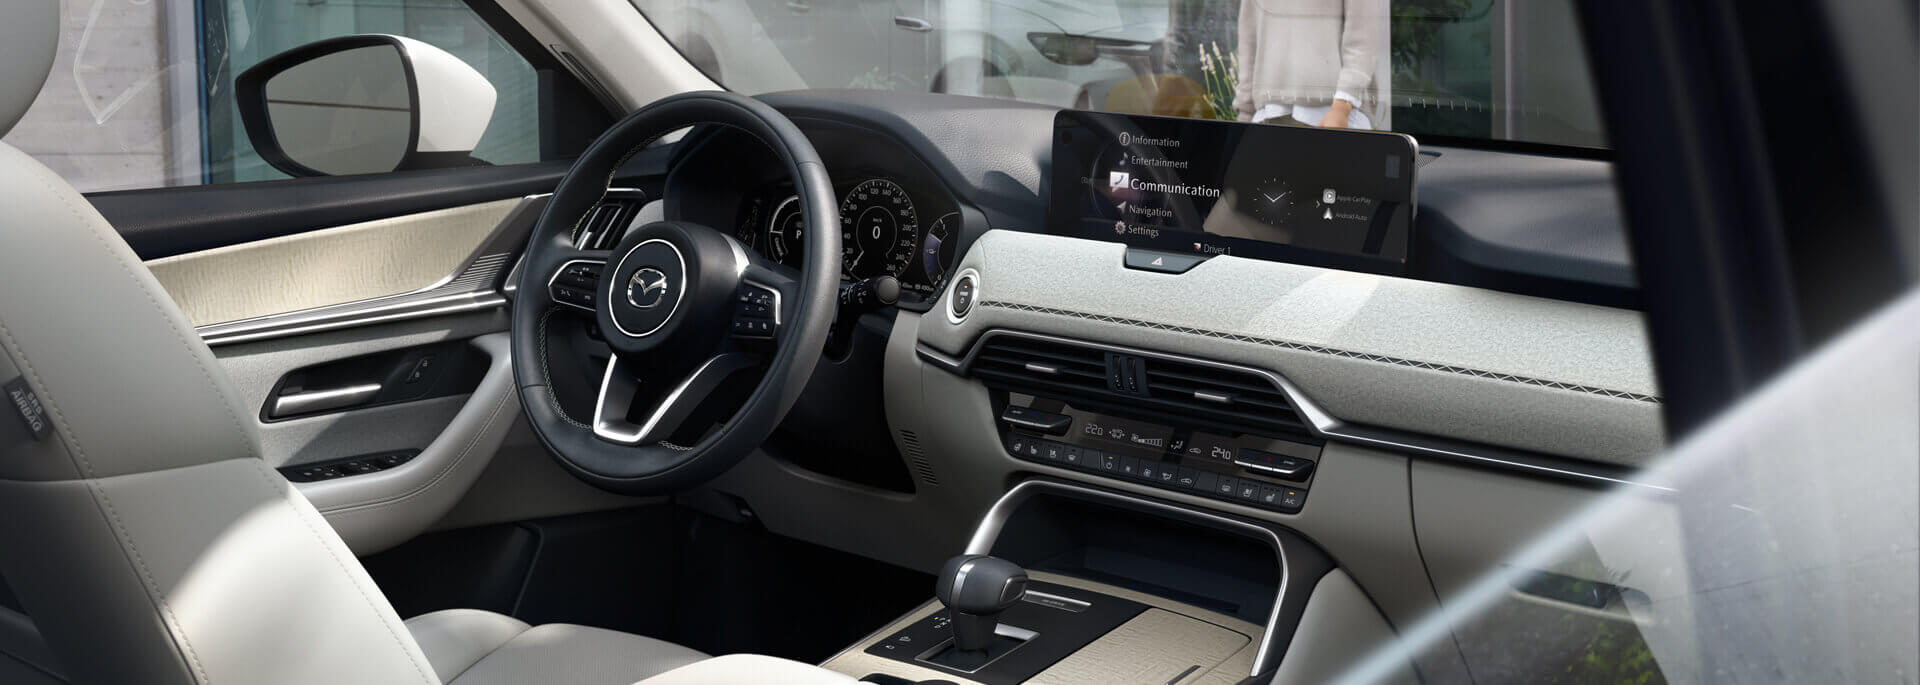 Interiorul spațios al noului SUV hibrid plug-in Mazda CX-60, prezentând măiestria japoneză.